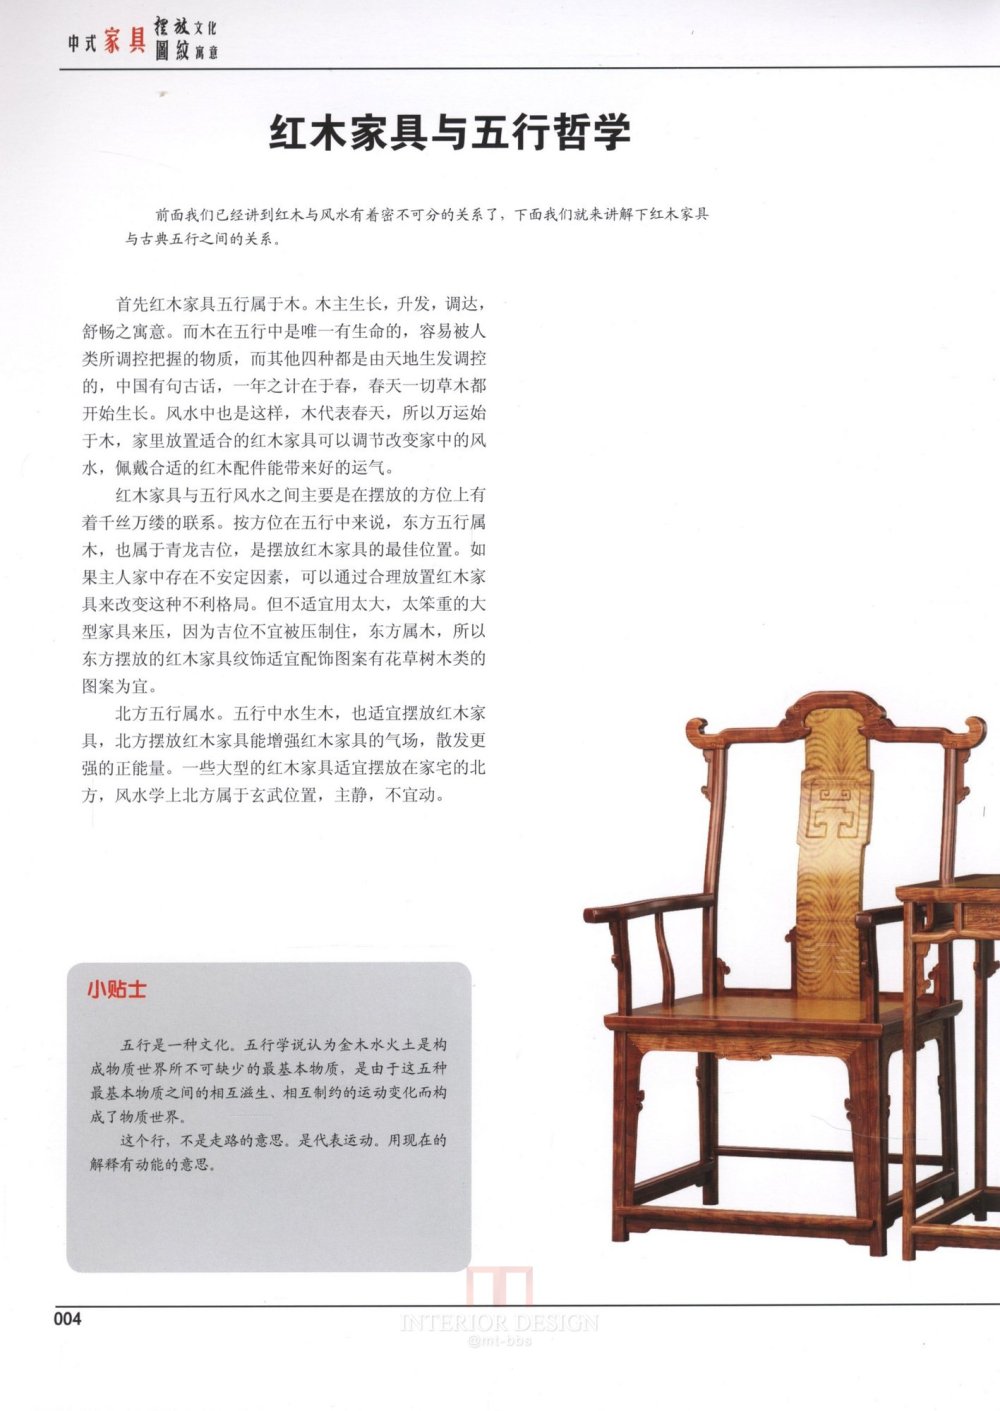 中式家具下册_kobe 0005.jpg